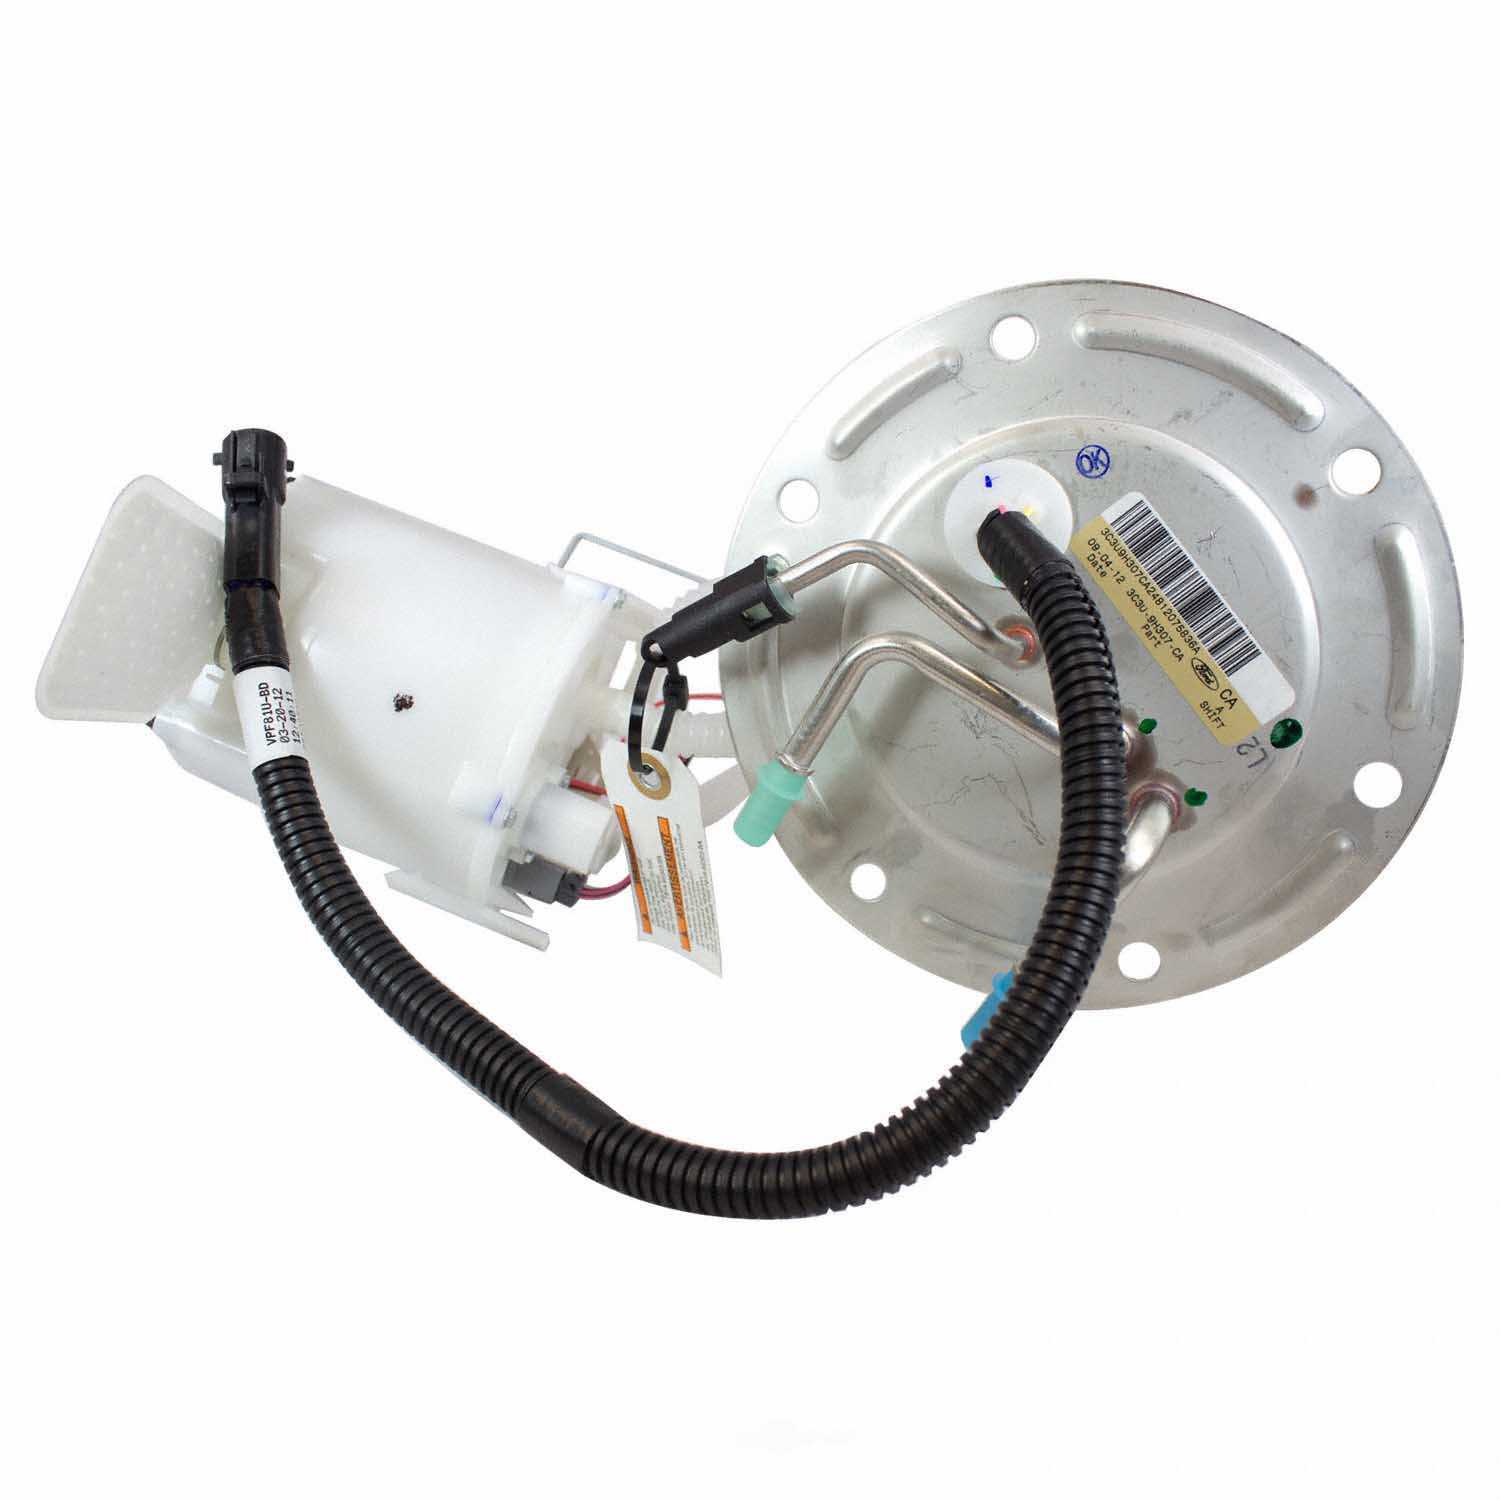 MOTORCRAFT - Fuel Pump And Sender Assembly - MOT PFS-270